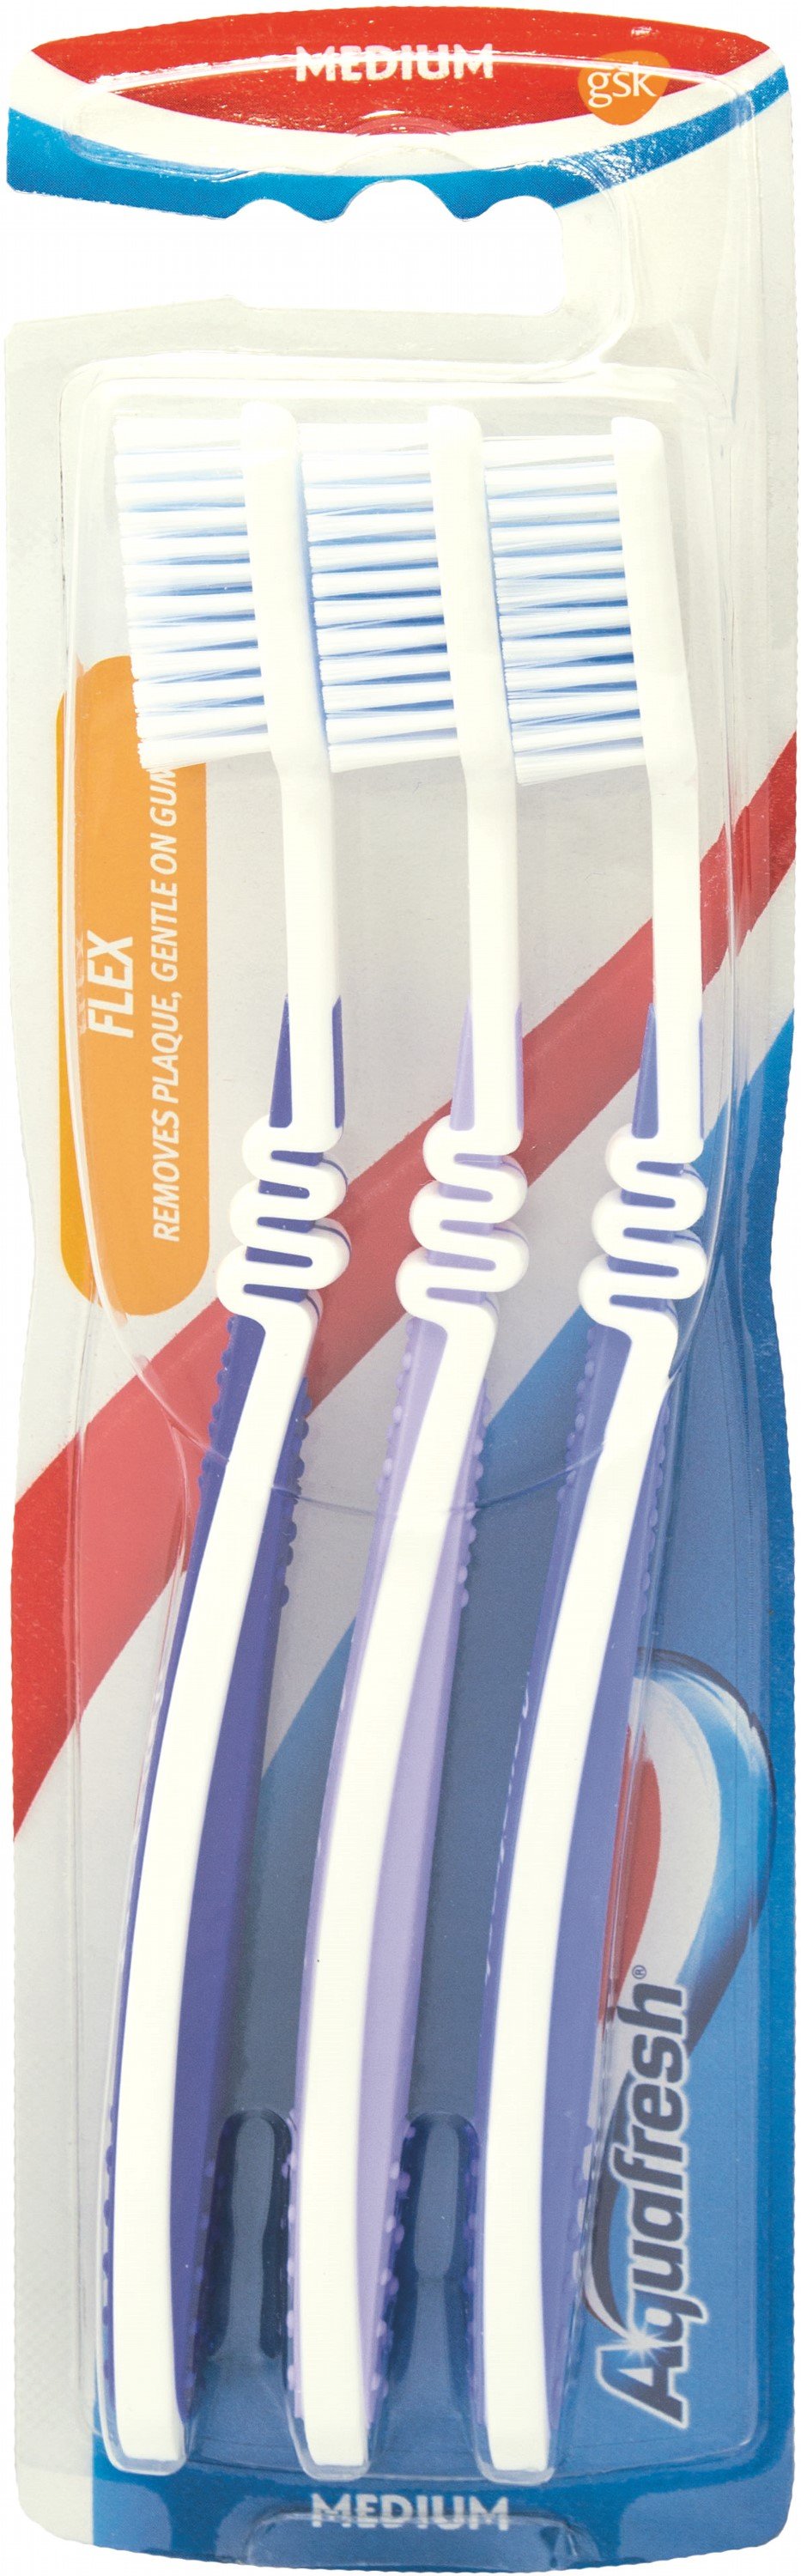 Зубна щітка Aquafresh Flex Medium, середня, синій, 3 шт. - фото 1